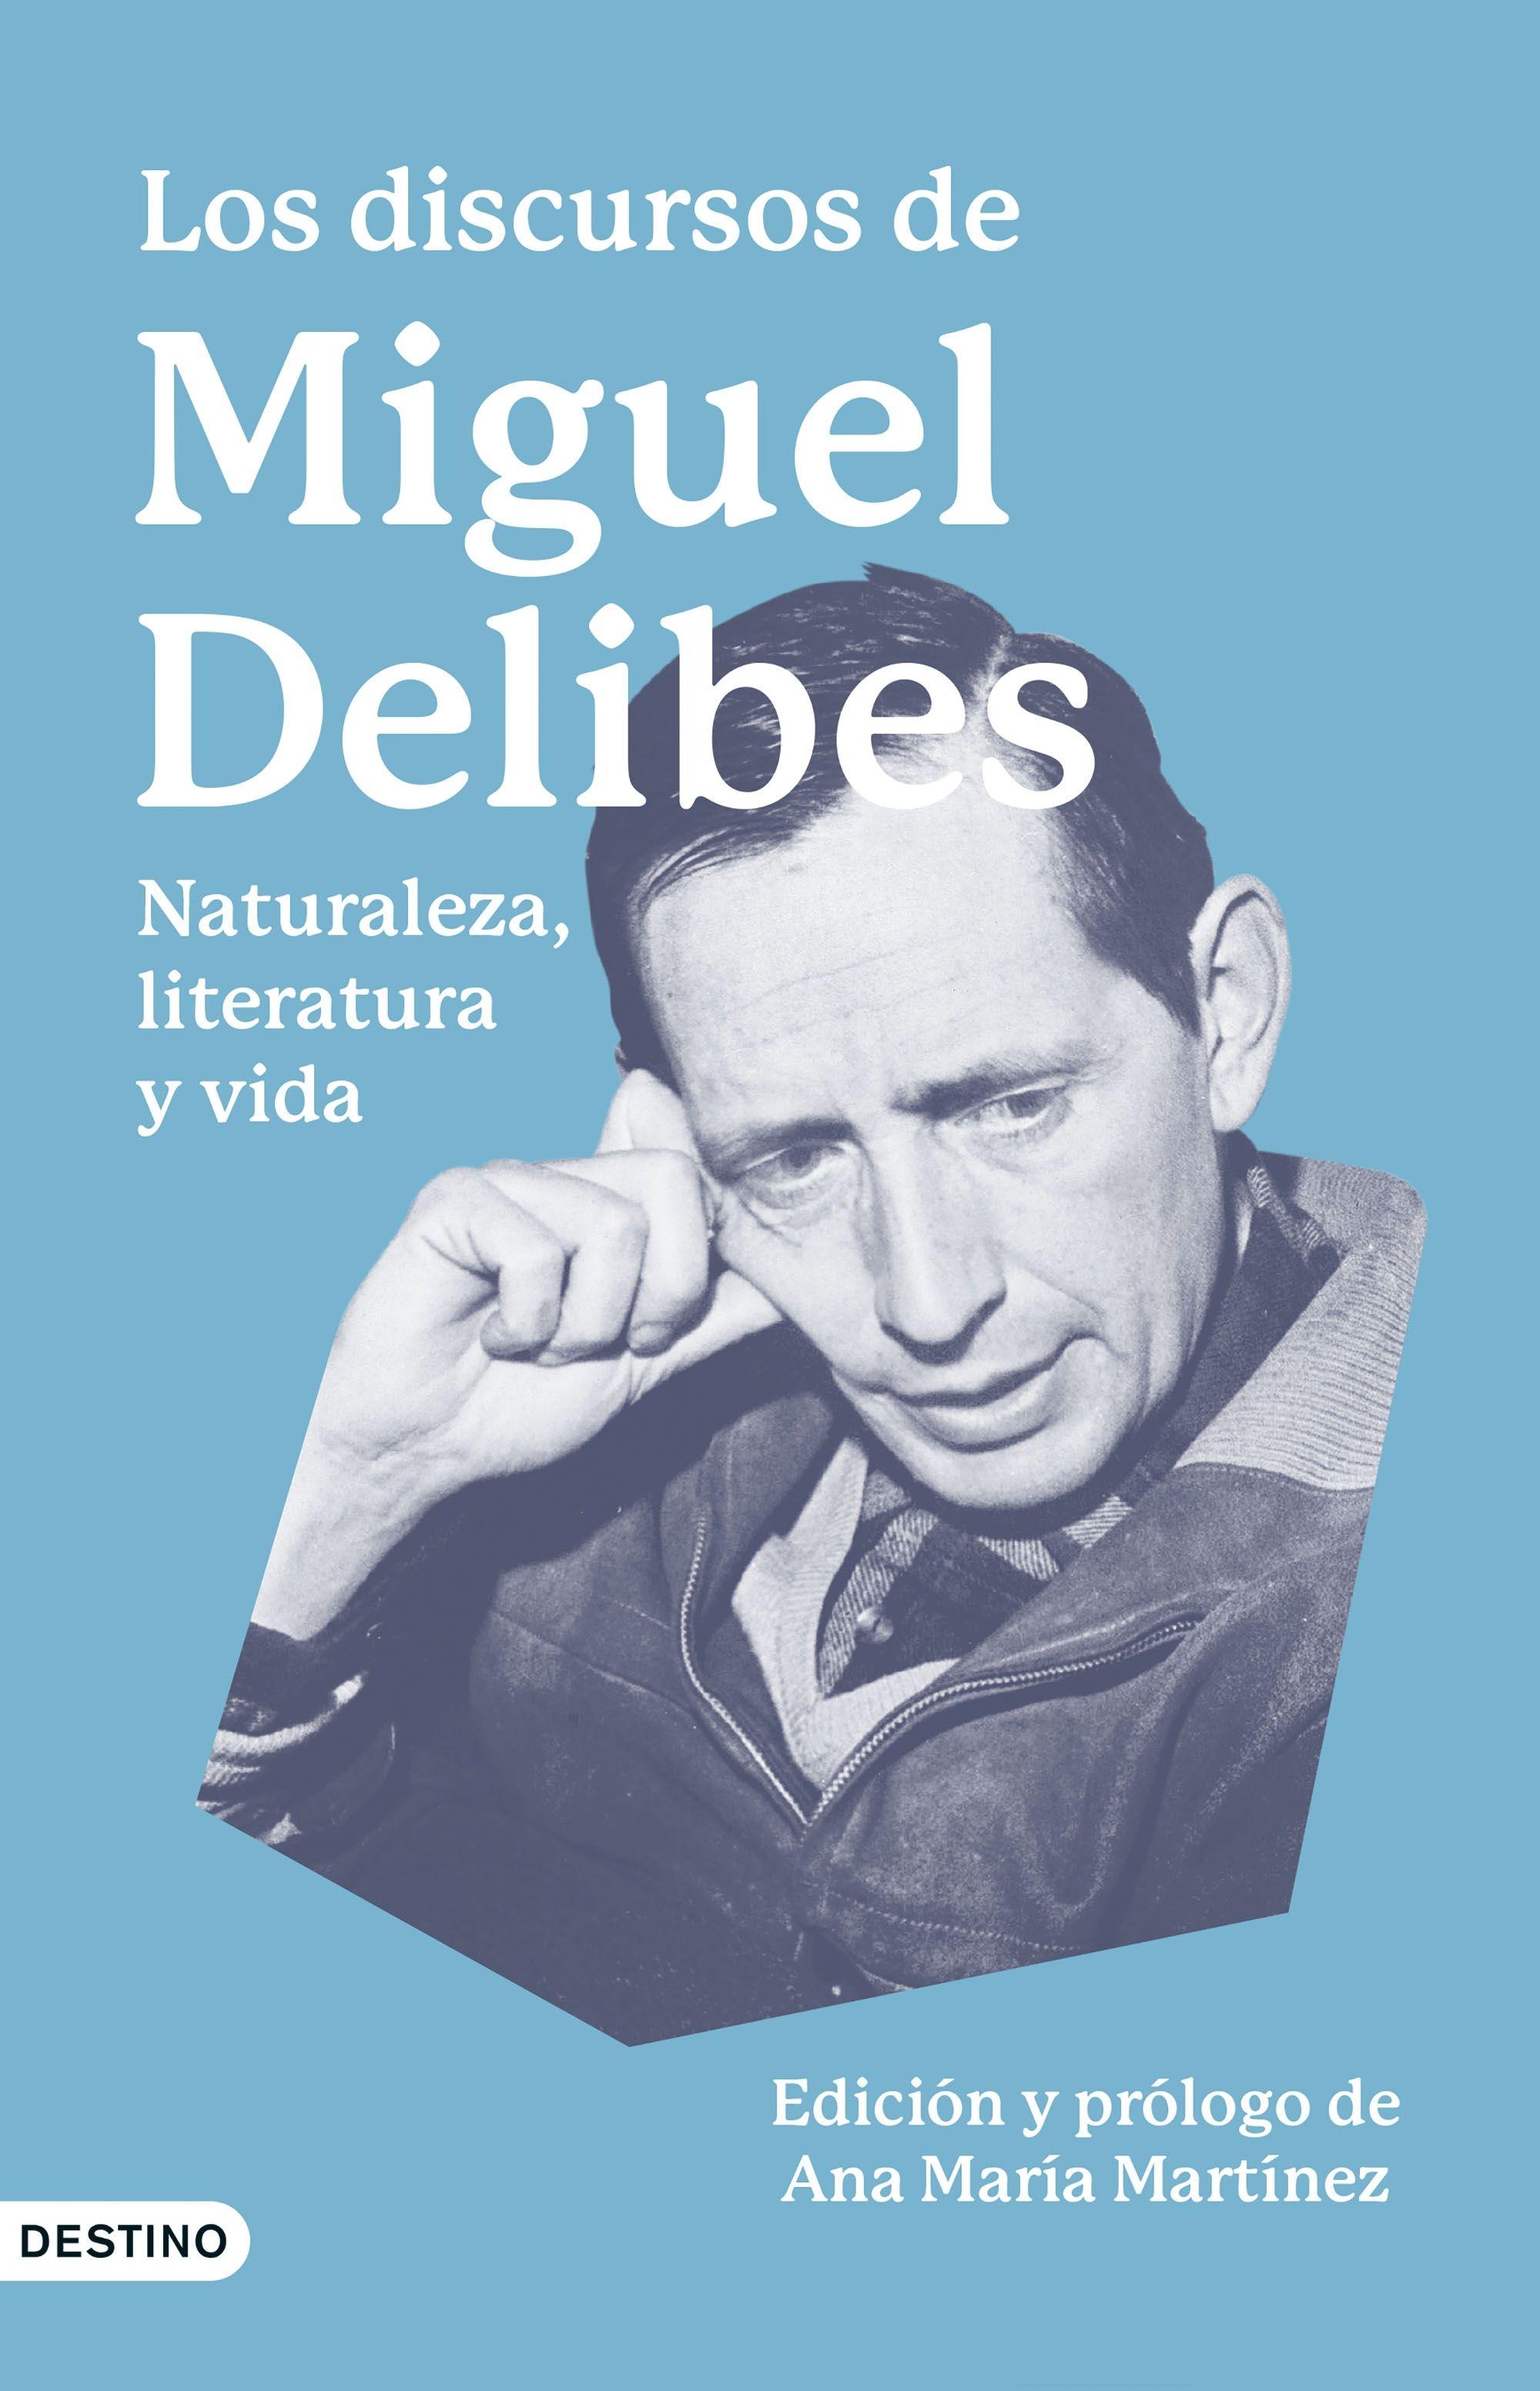 Los discursos de Miguel Delibes "Naturaleza, literatura y vida"